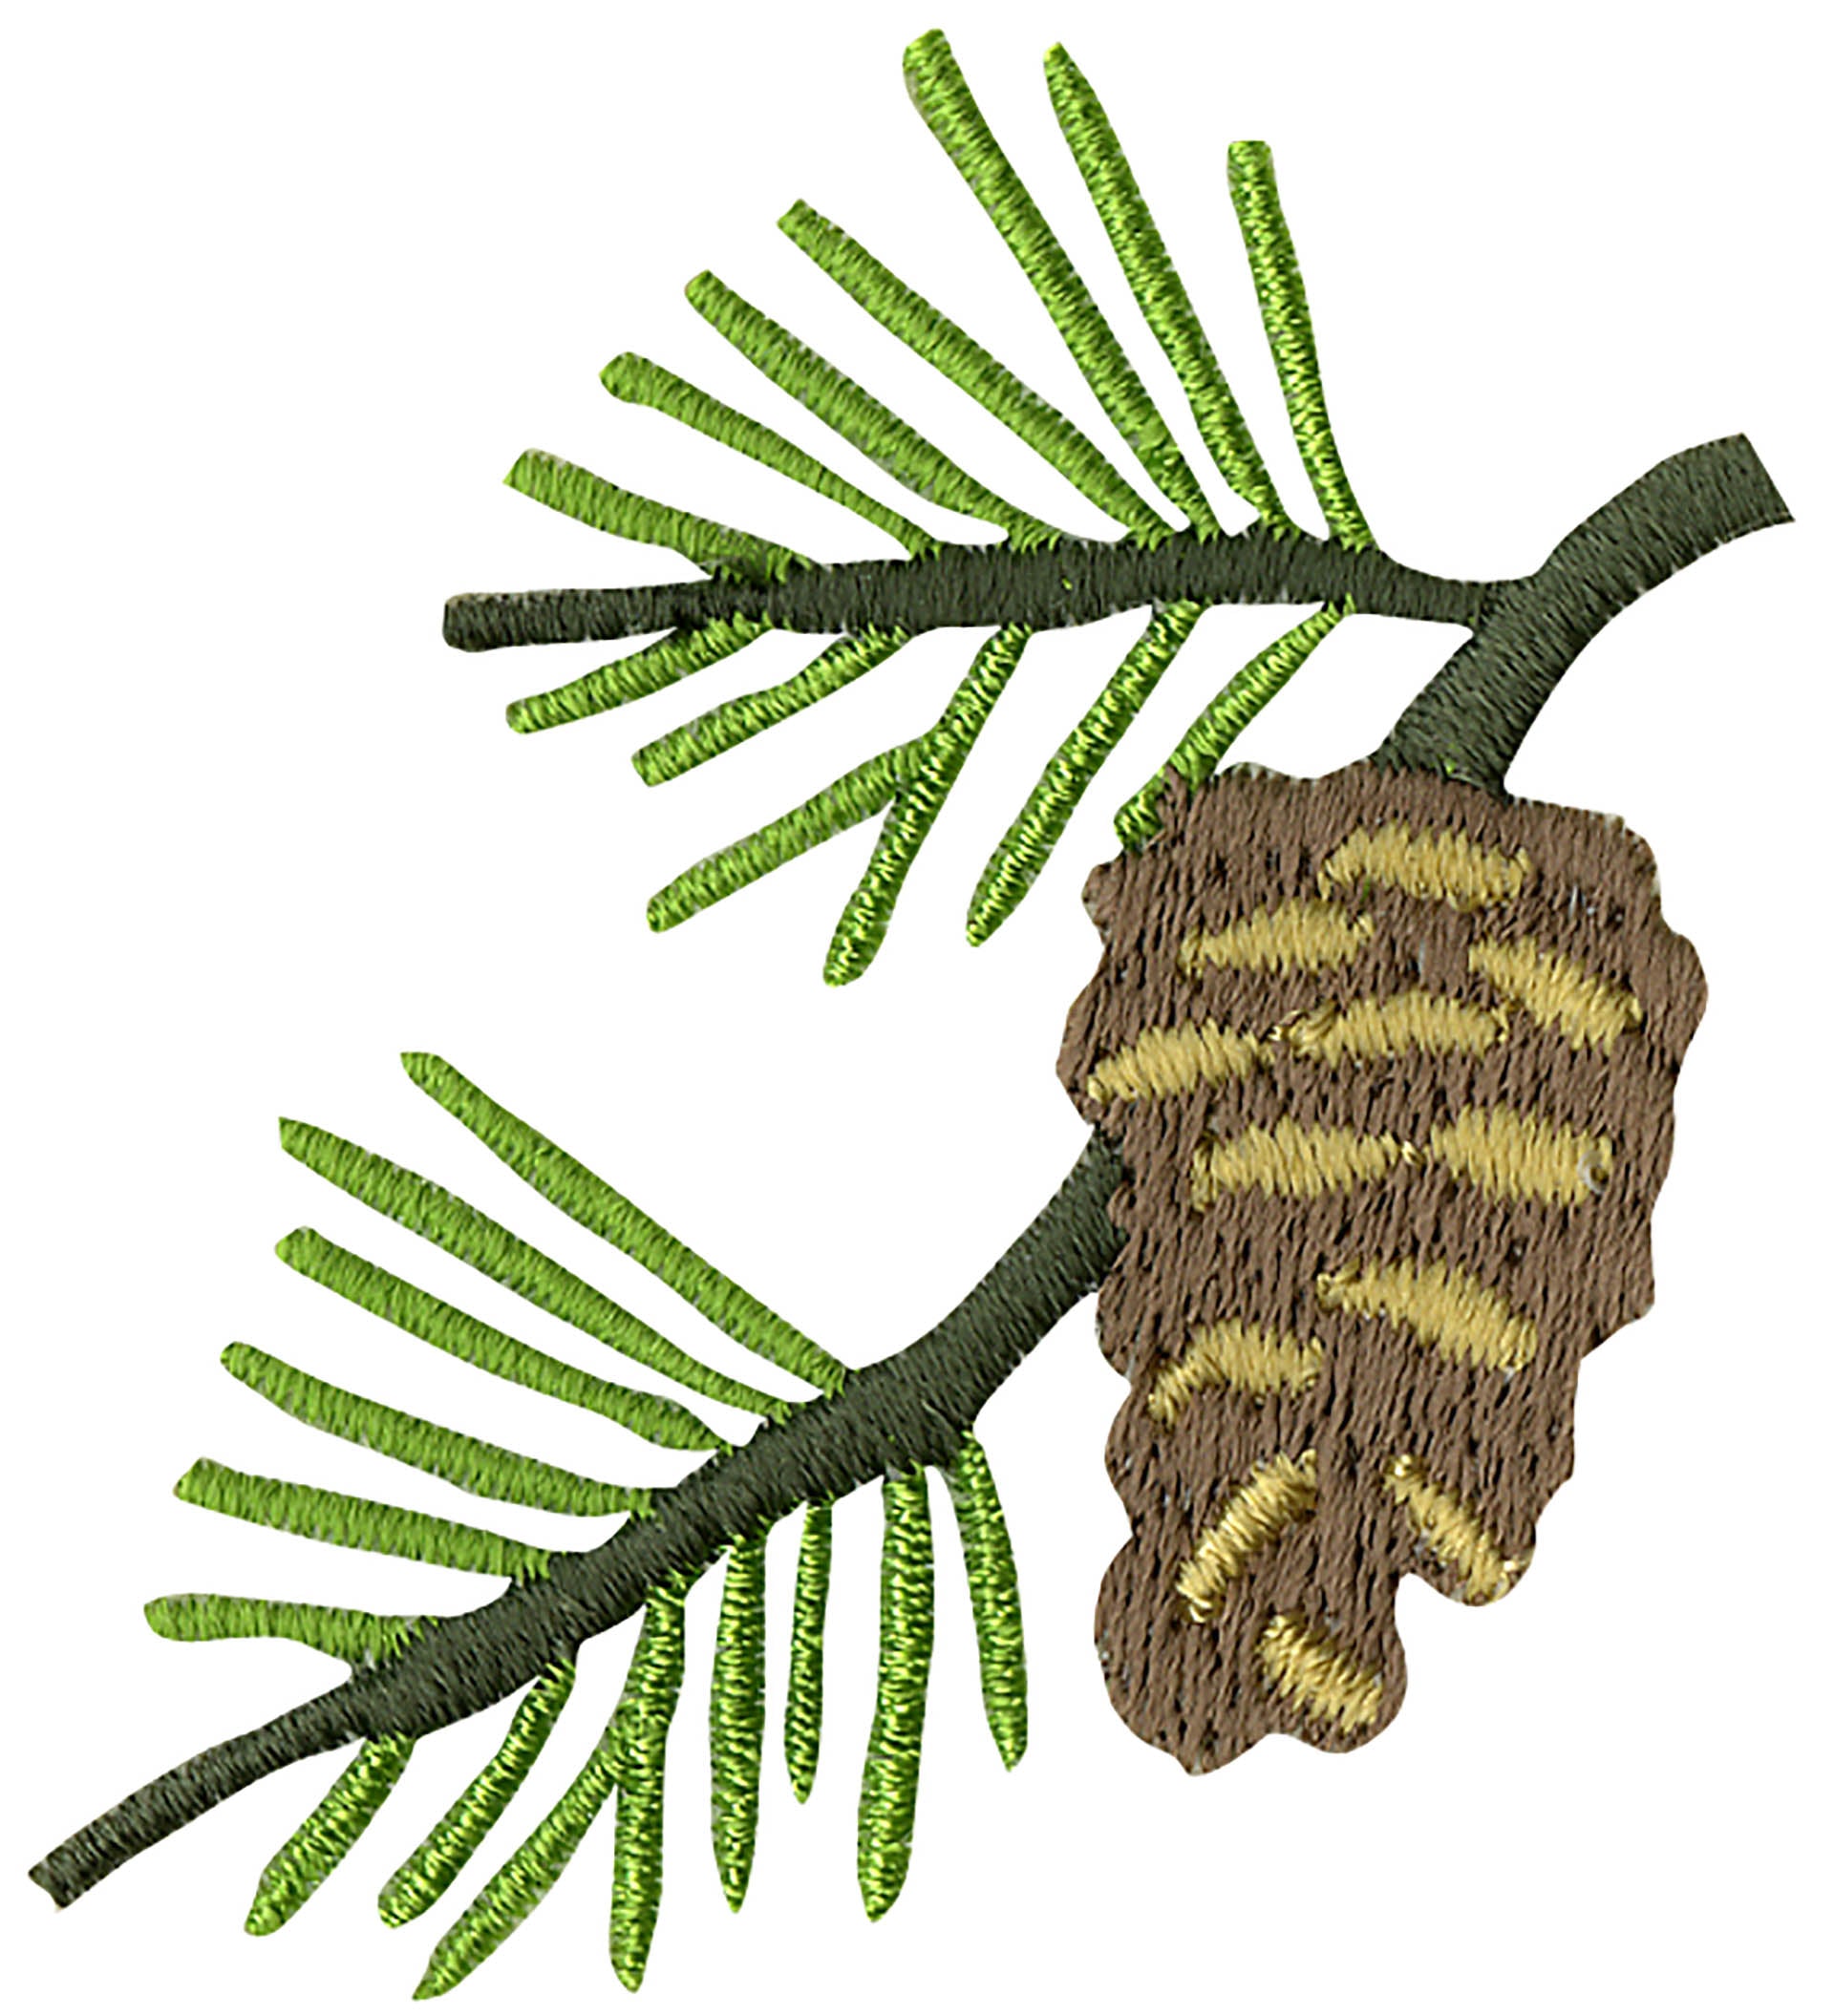 Bear Applique with Pine Cones Applique - Embroidery Designs